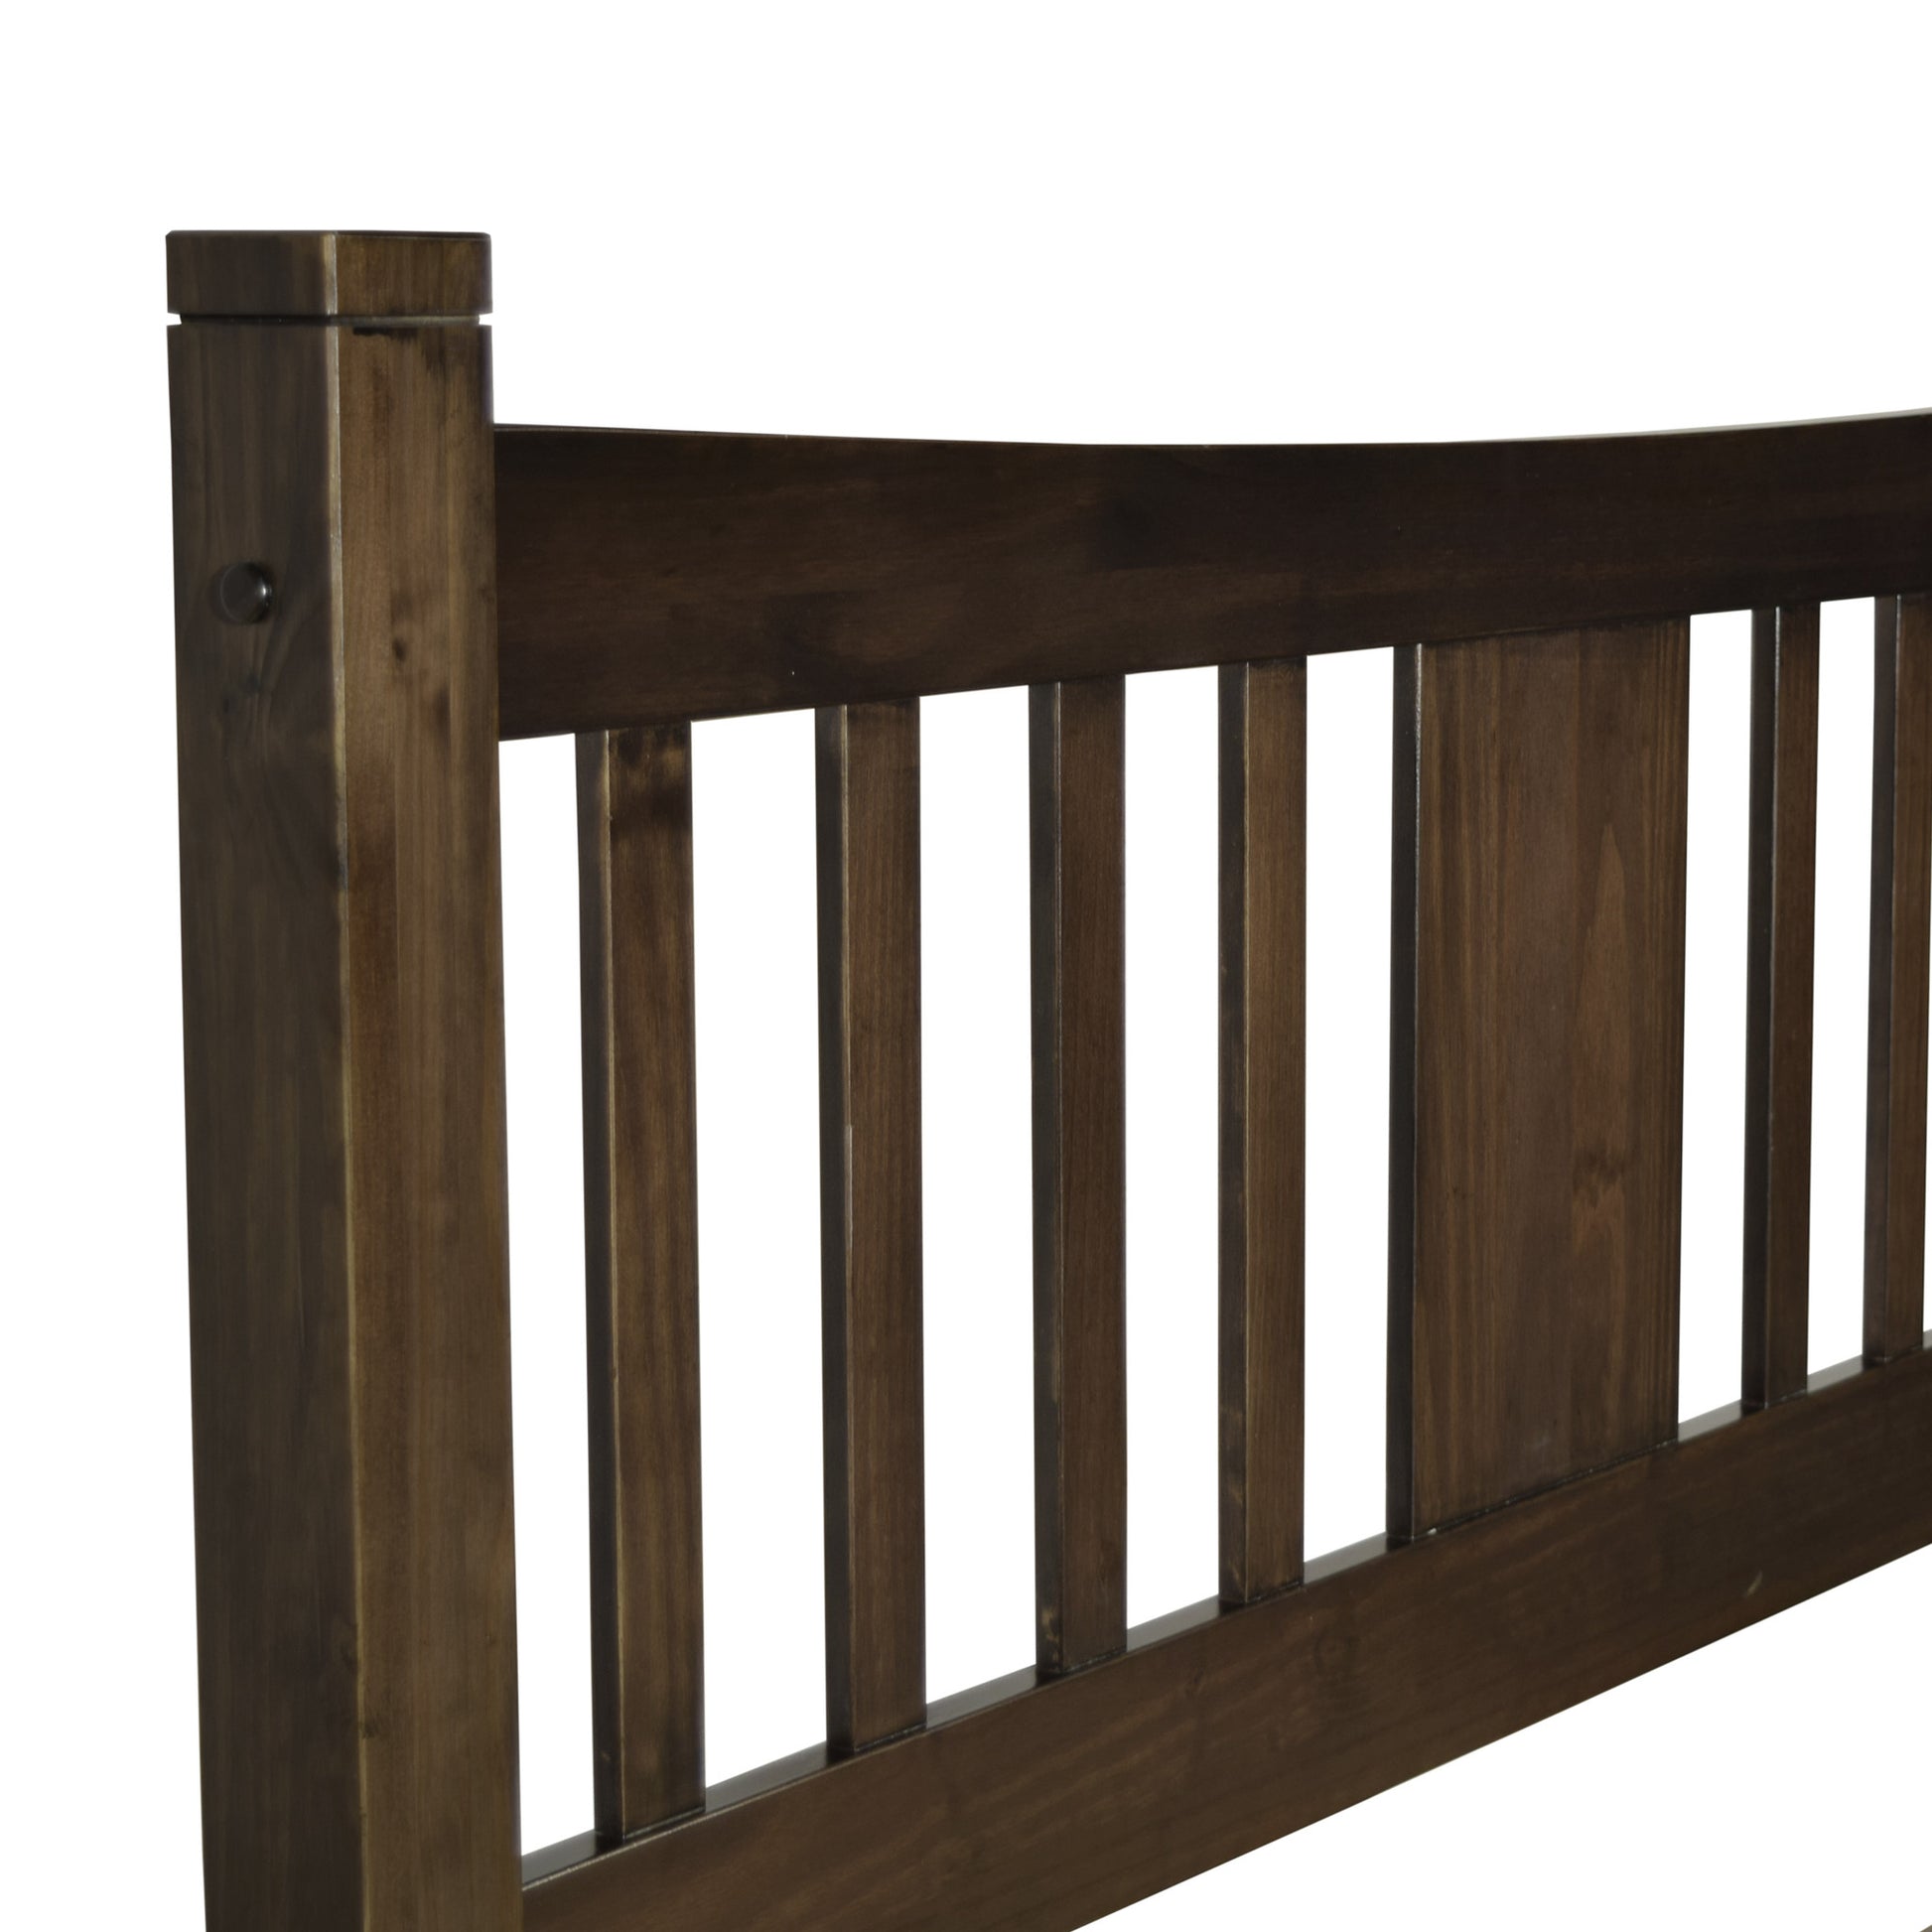 Shaker Queen Slat Platform Bed -  - Grain Wood Furniture - 6